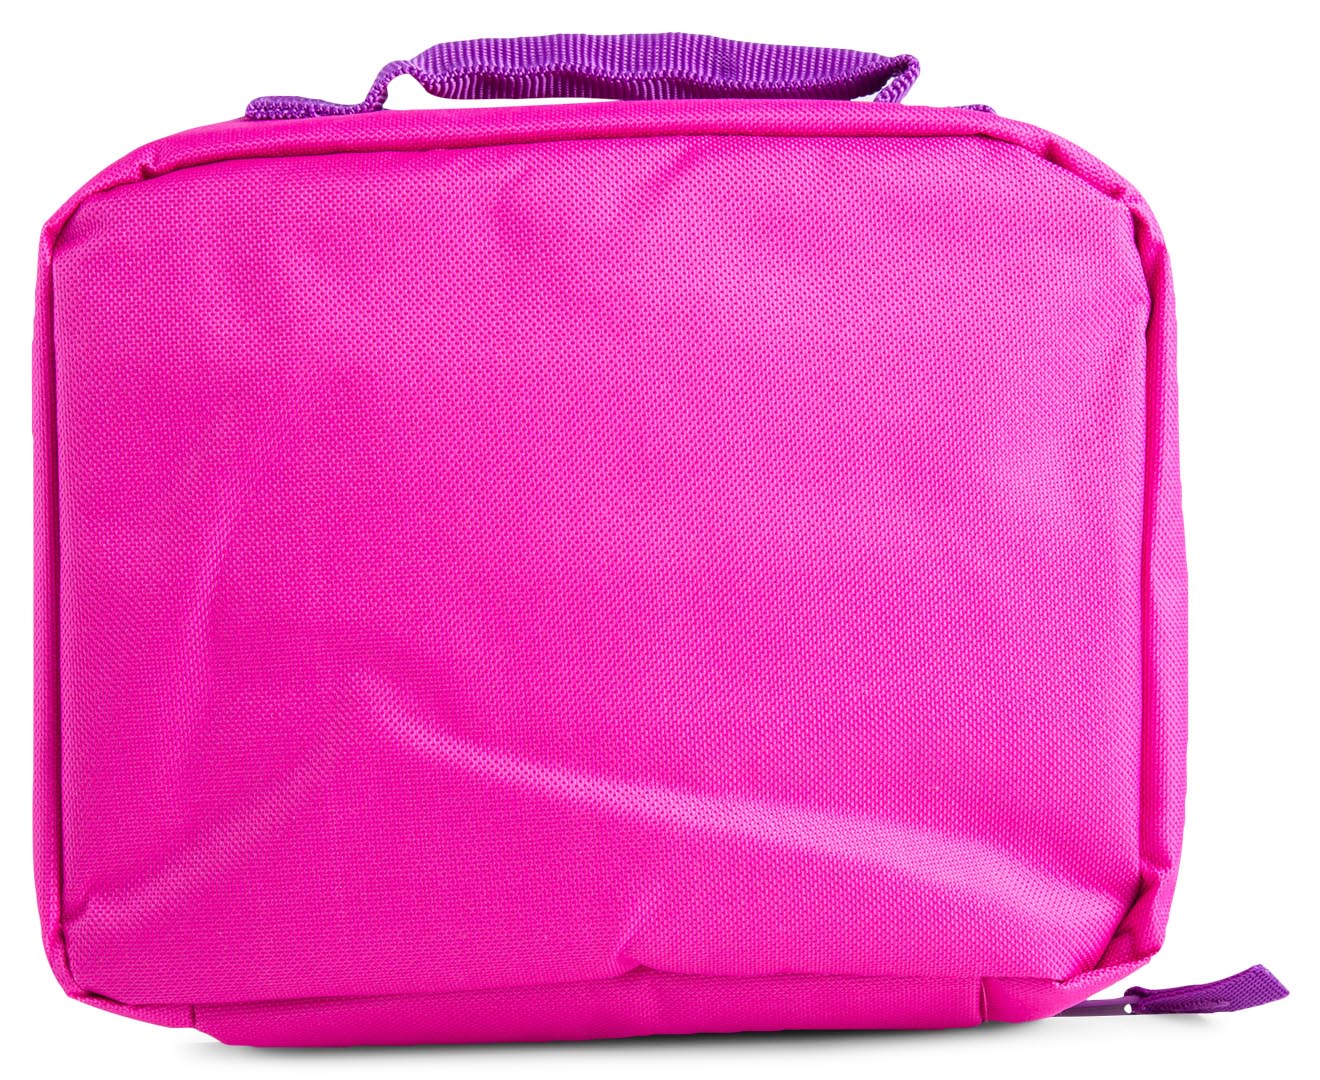 Disney Frozen Lunch Bag - Pink | Catch.com.au